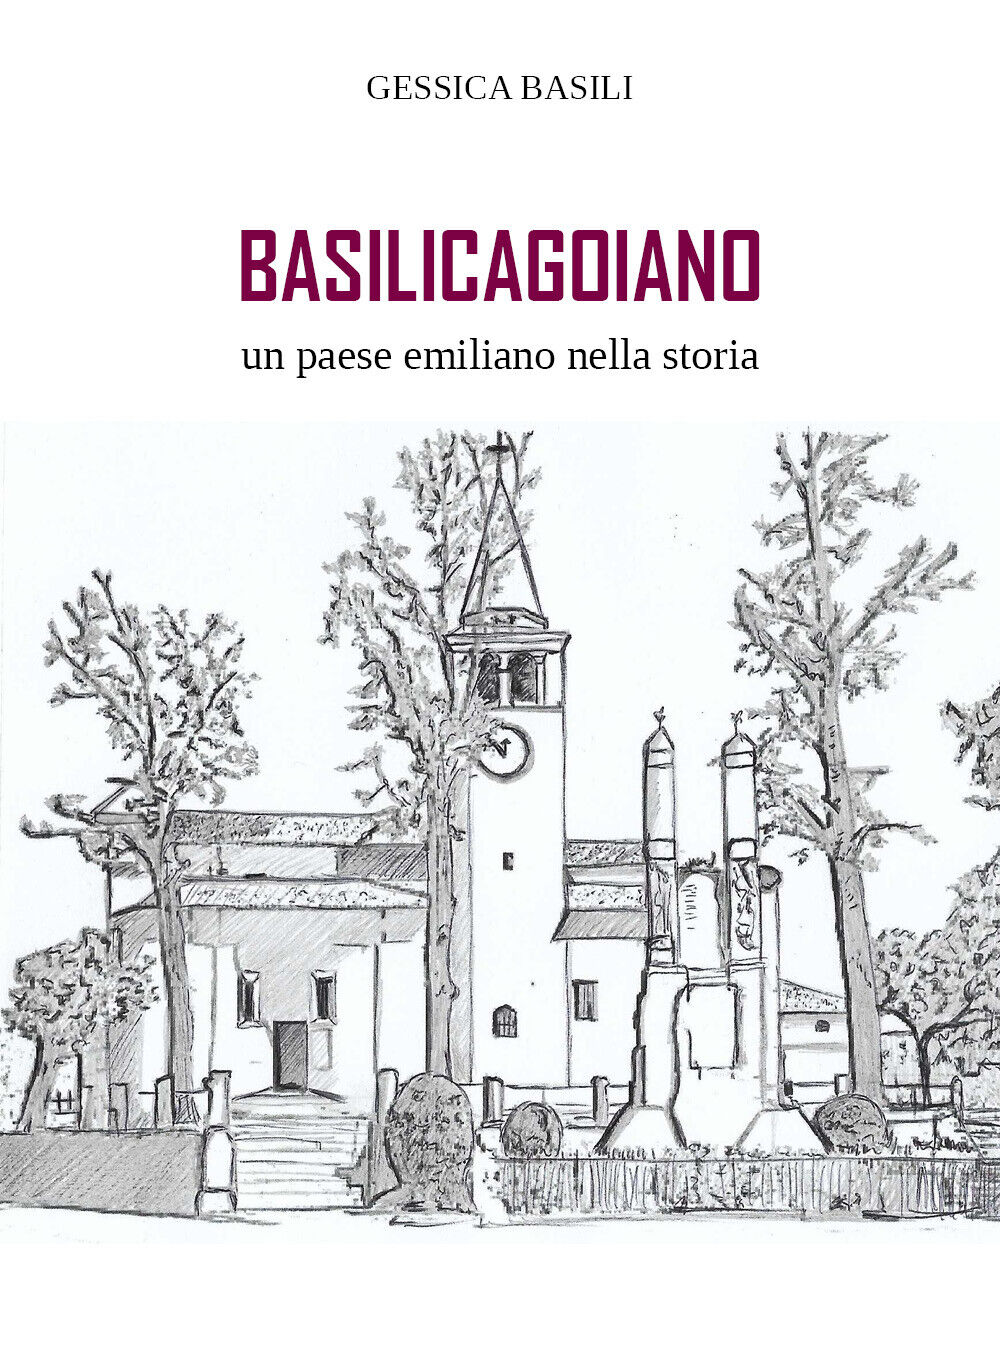 Basilicagoiano un paese emiliano nella storia di Gessica Basili,  2018,  Youcanp